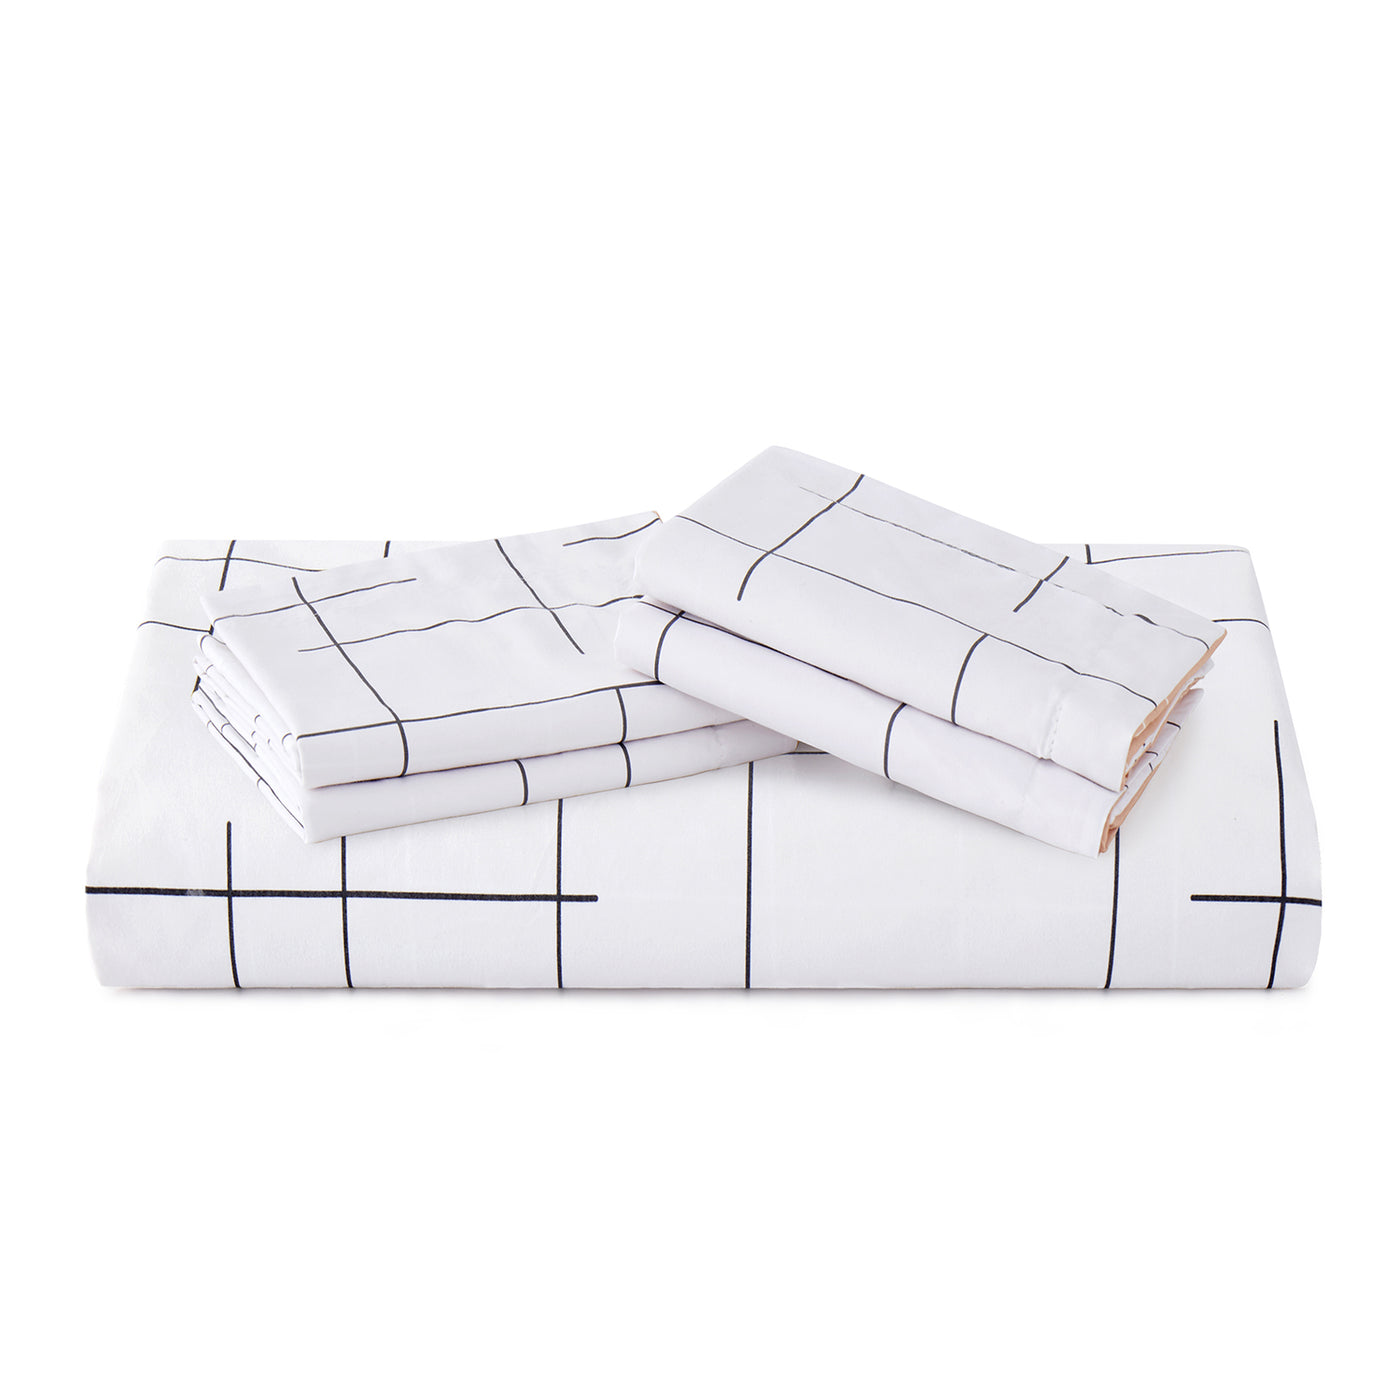 Tile Pattern Printed Reversible Duvet Cover Set White/Cream